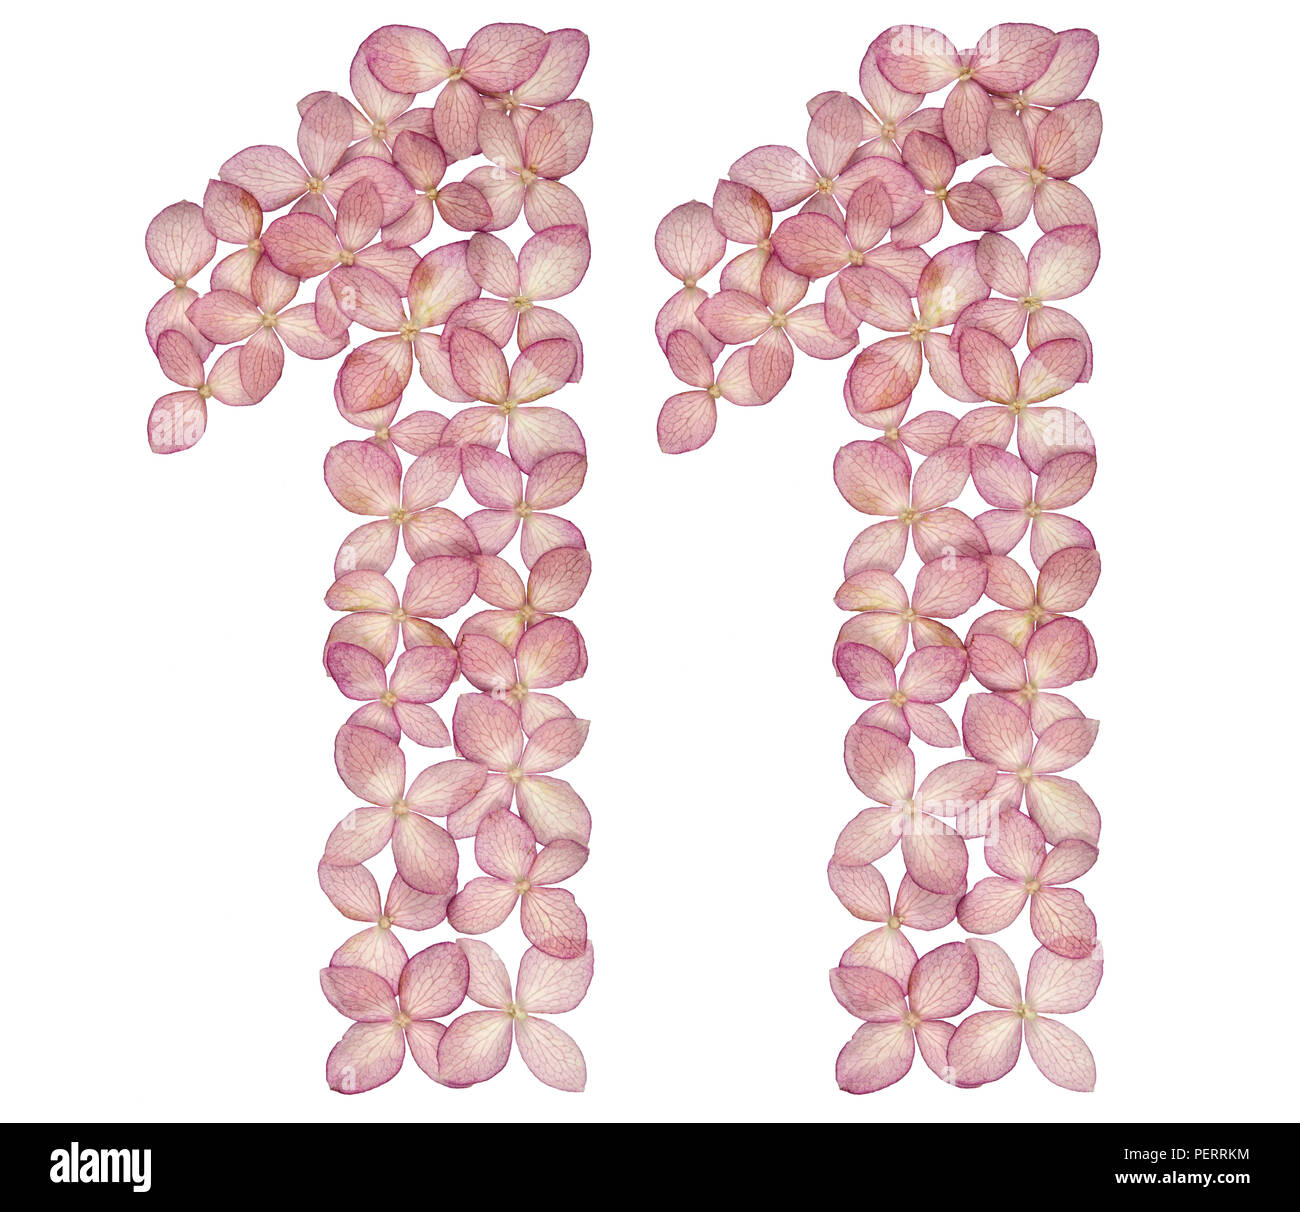 Numero arabo 11, undici,da fiori di ortensie, isolato su sfondo bianco Foto Stock